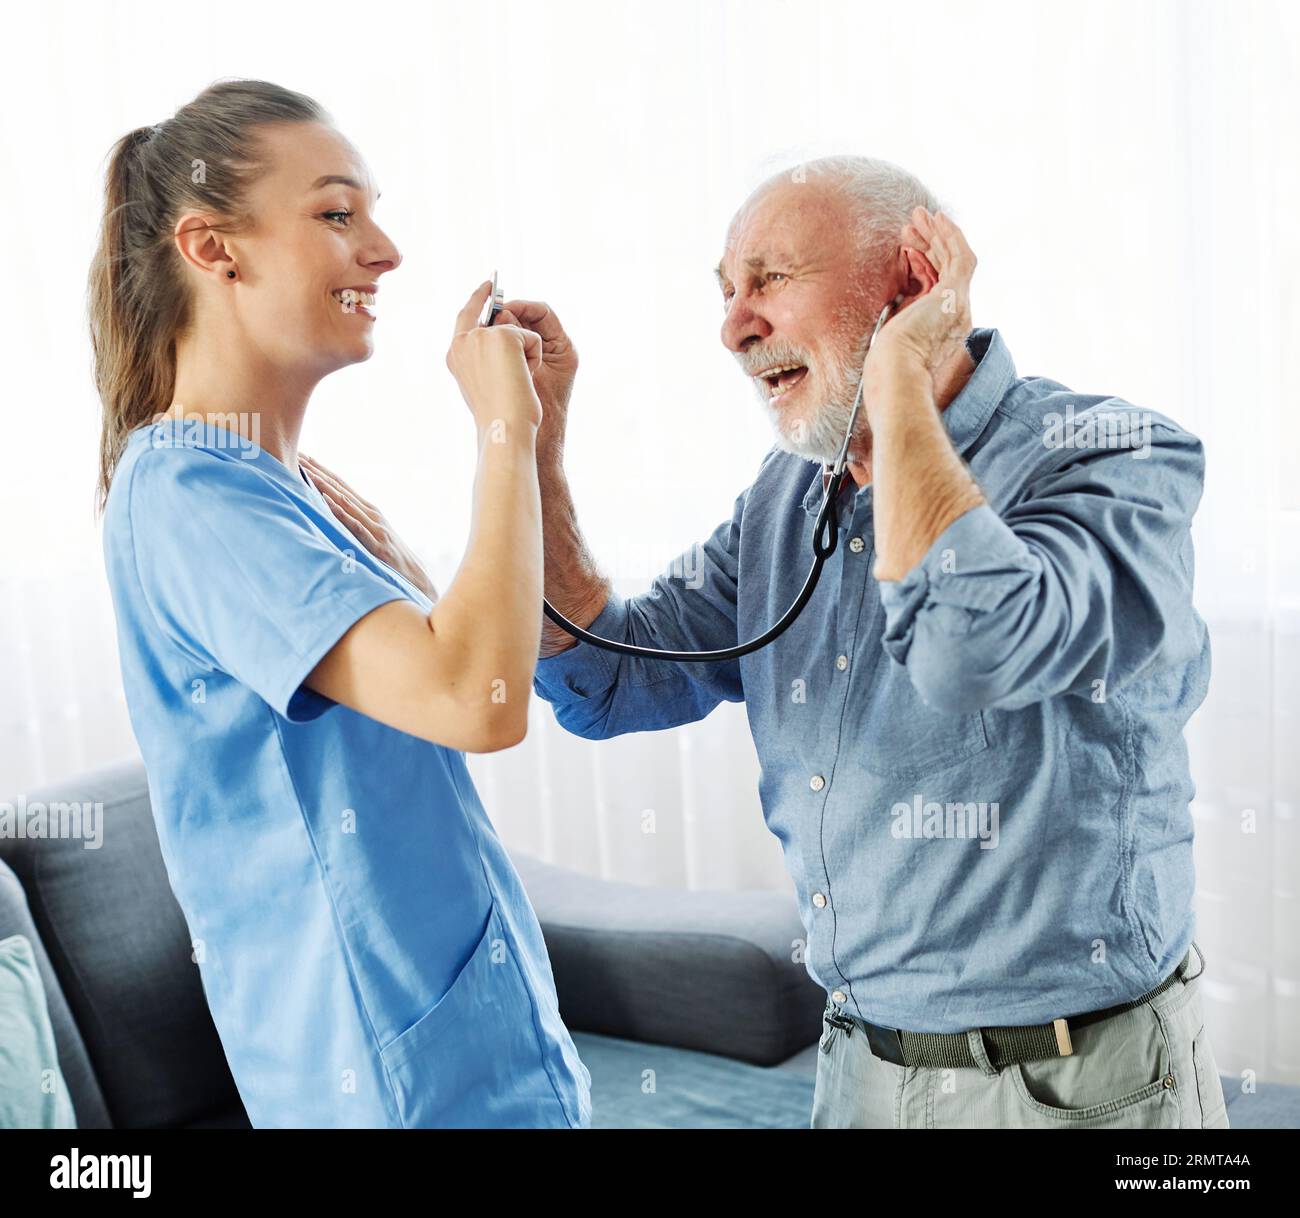 infirmière médecin soignant senior soignant aider à vérifier l'examen amusant humour drôle maison de retraite stéthoscope infirmière homme âgé femme soutien de santé Banque D'Images